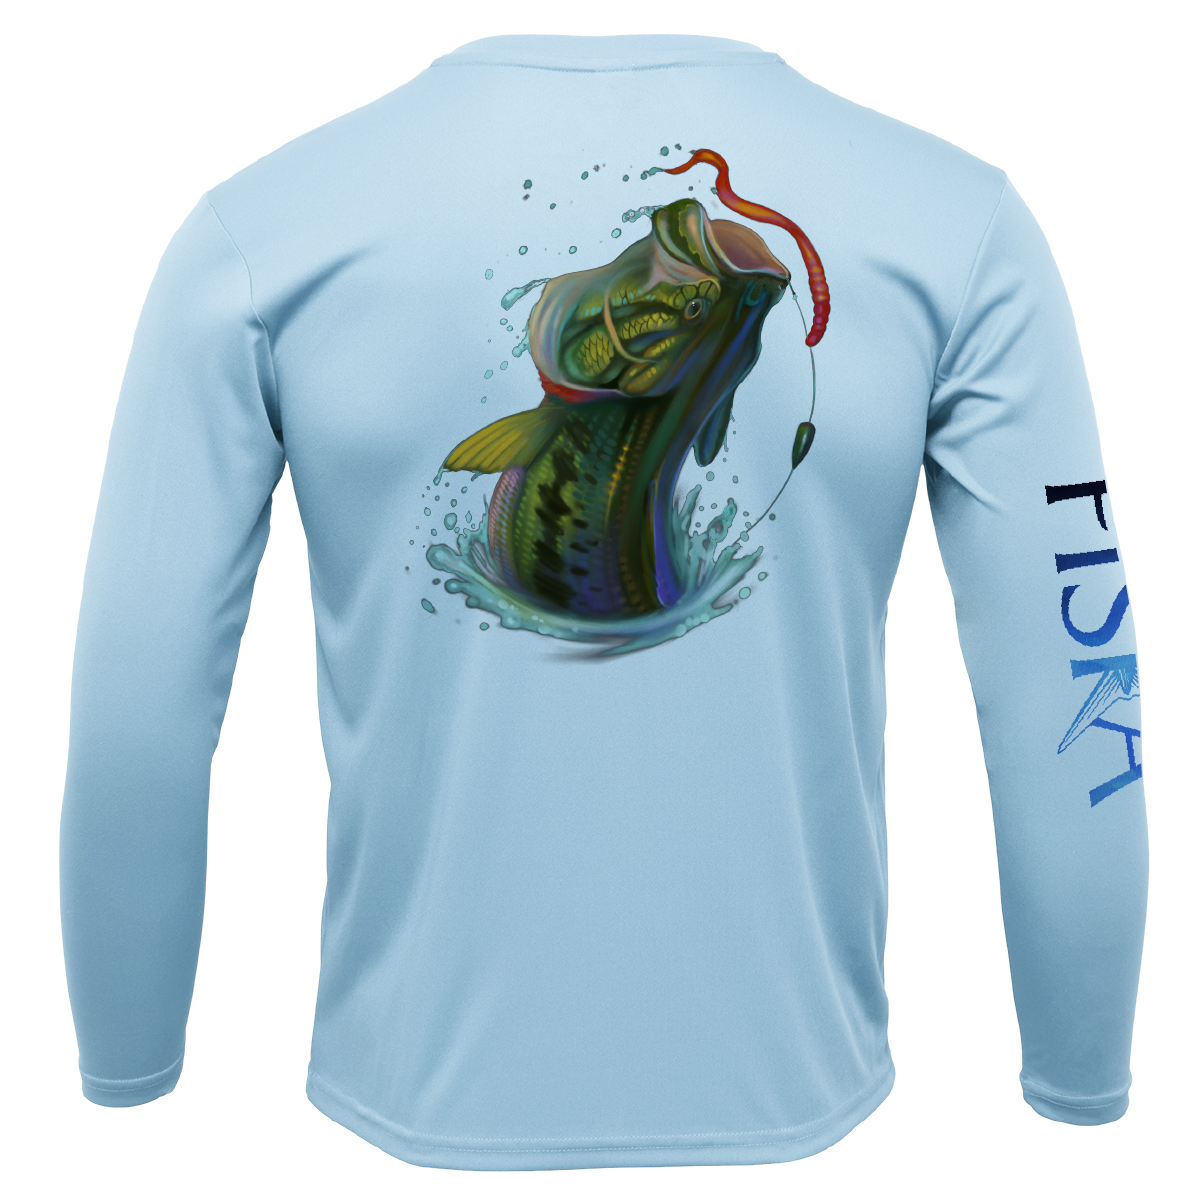 Blue UV Summer Bass Fishing Shirt Jersey Quick Dry – Outdoor Good